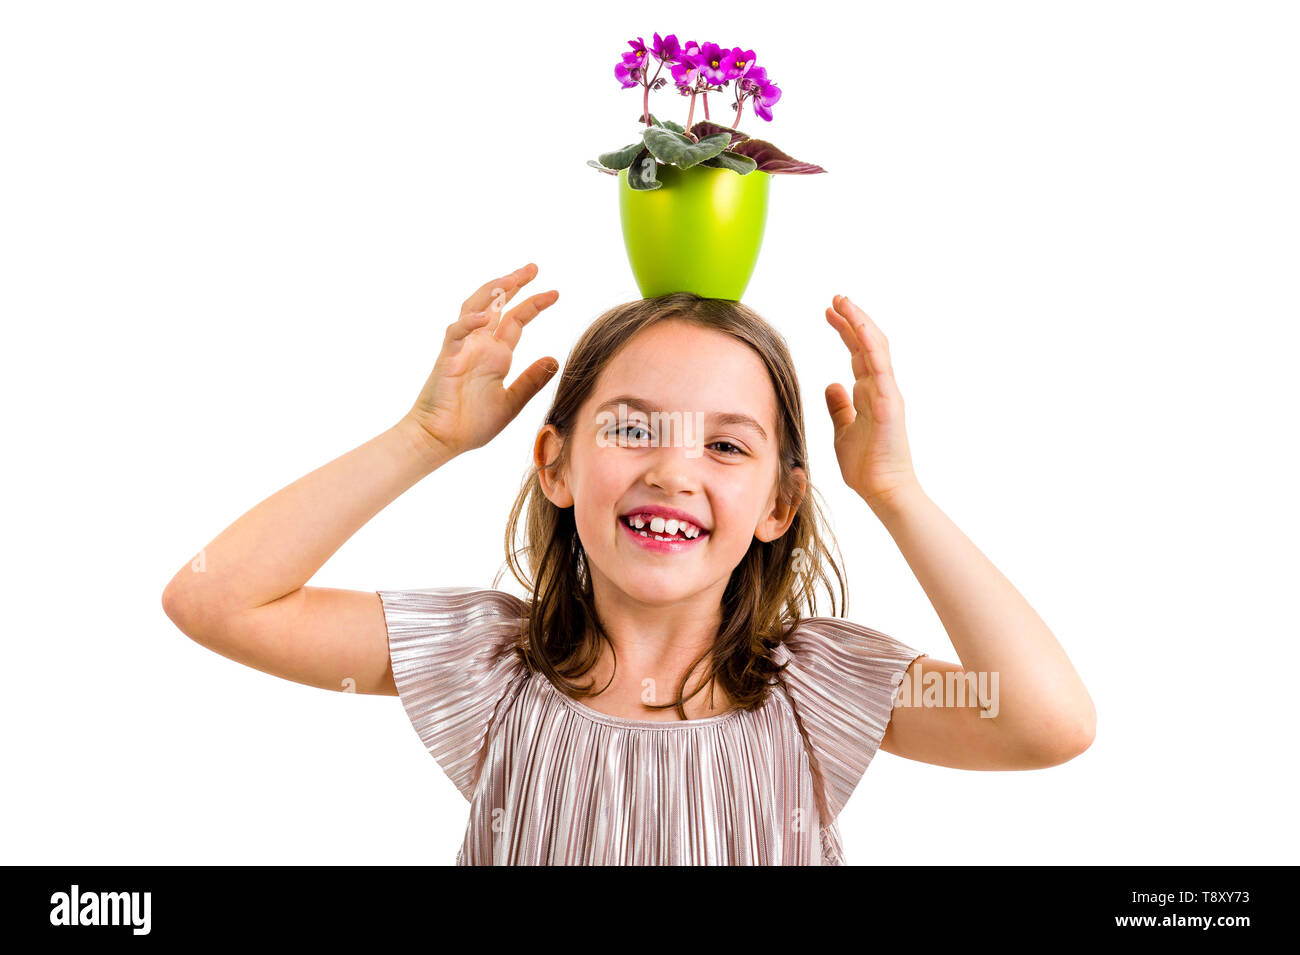 Girl carrying flower pot on head, having fun smiling. Little girl in dress holding green flower pot with viola flowers on her head having fun, goofing Stock Photo